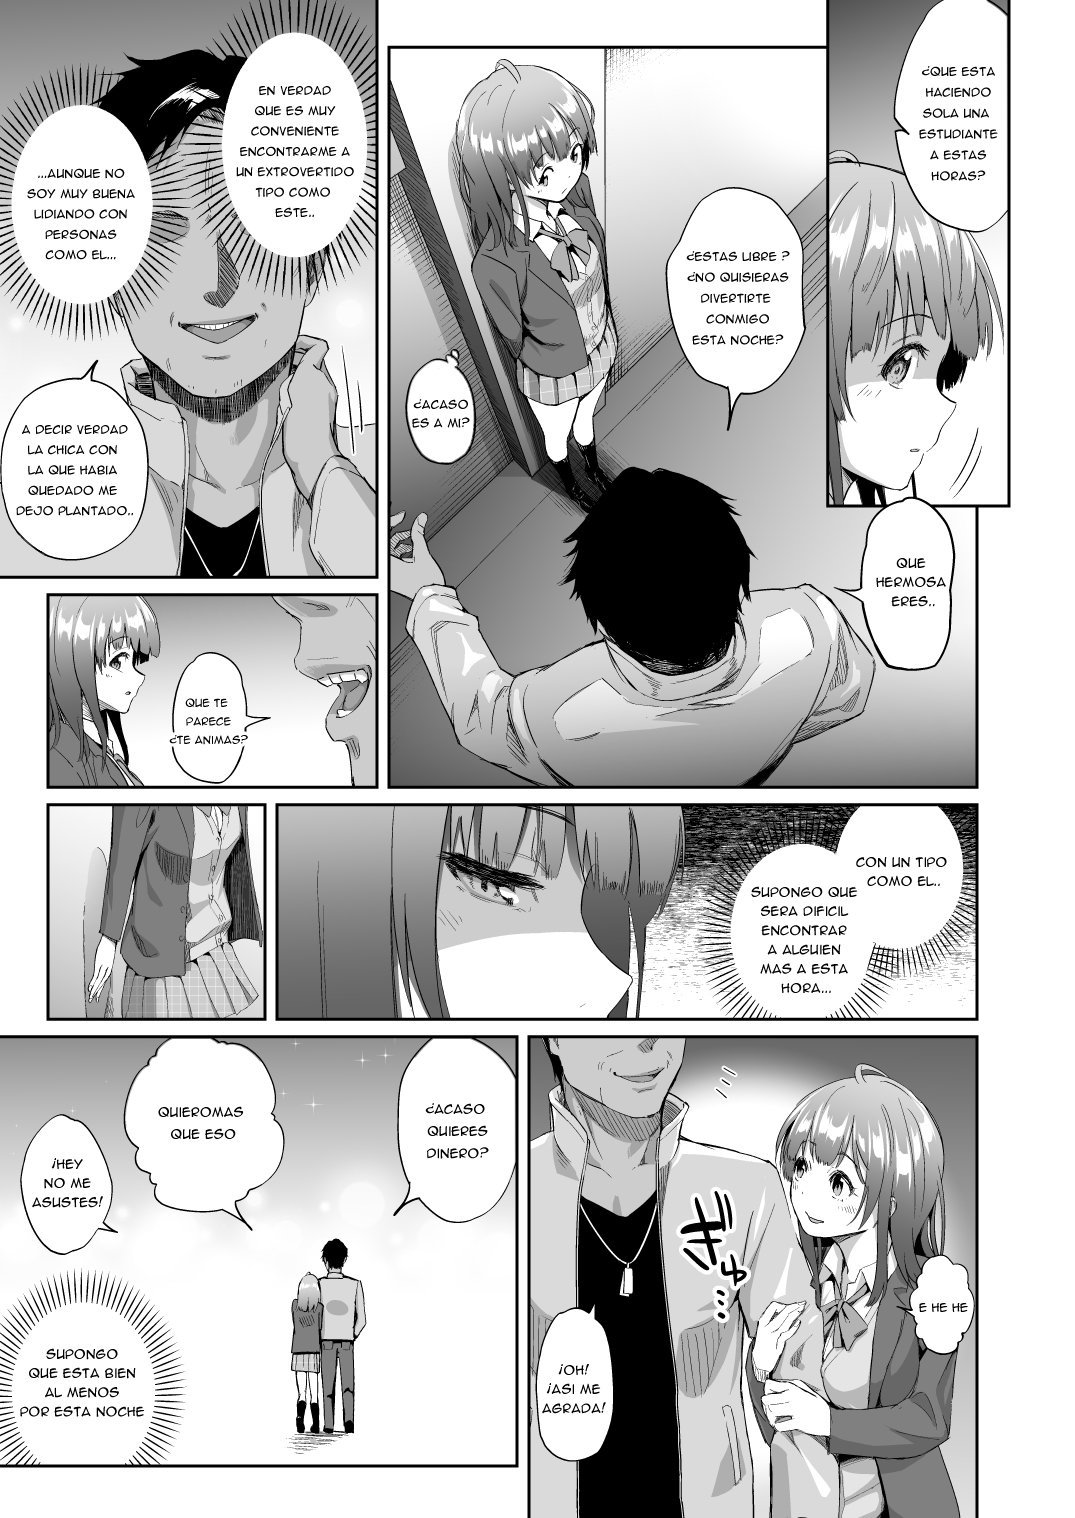 Diario de la promiscuidad de Sayu - 4